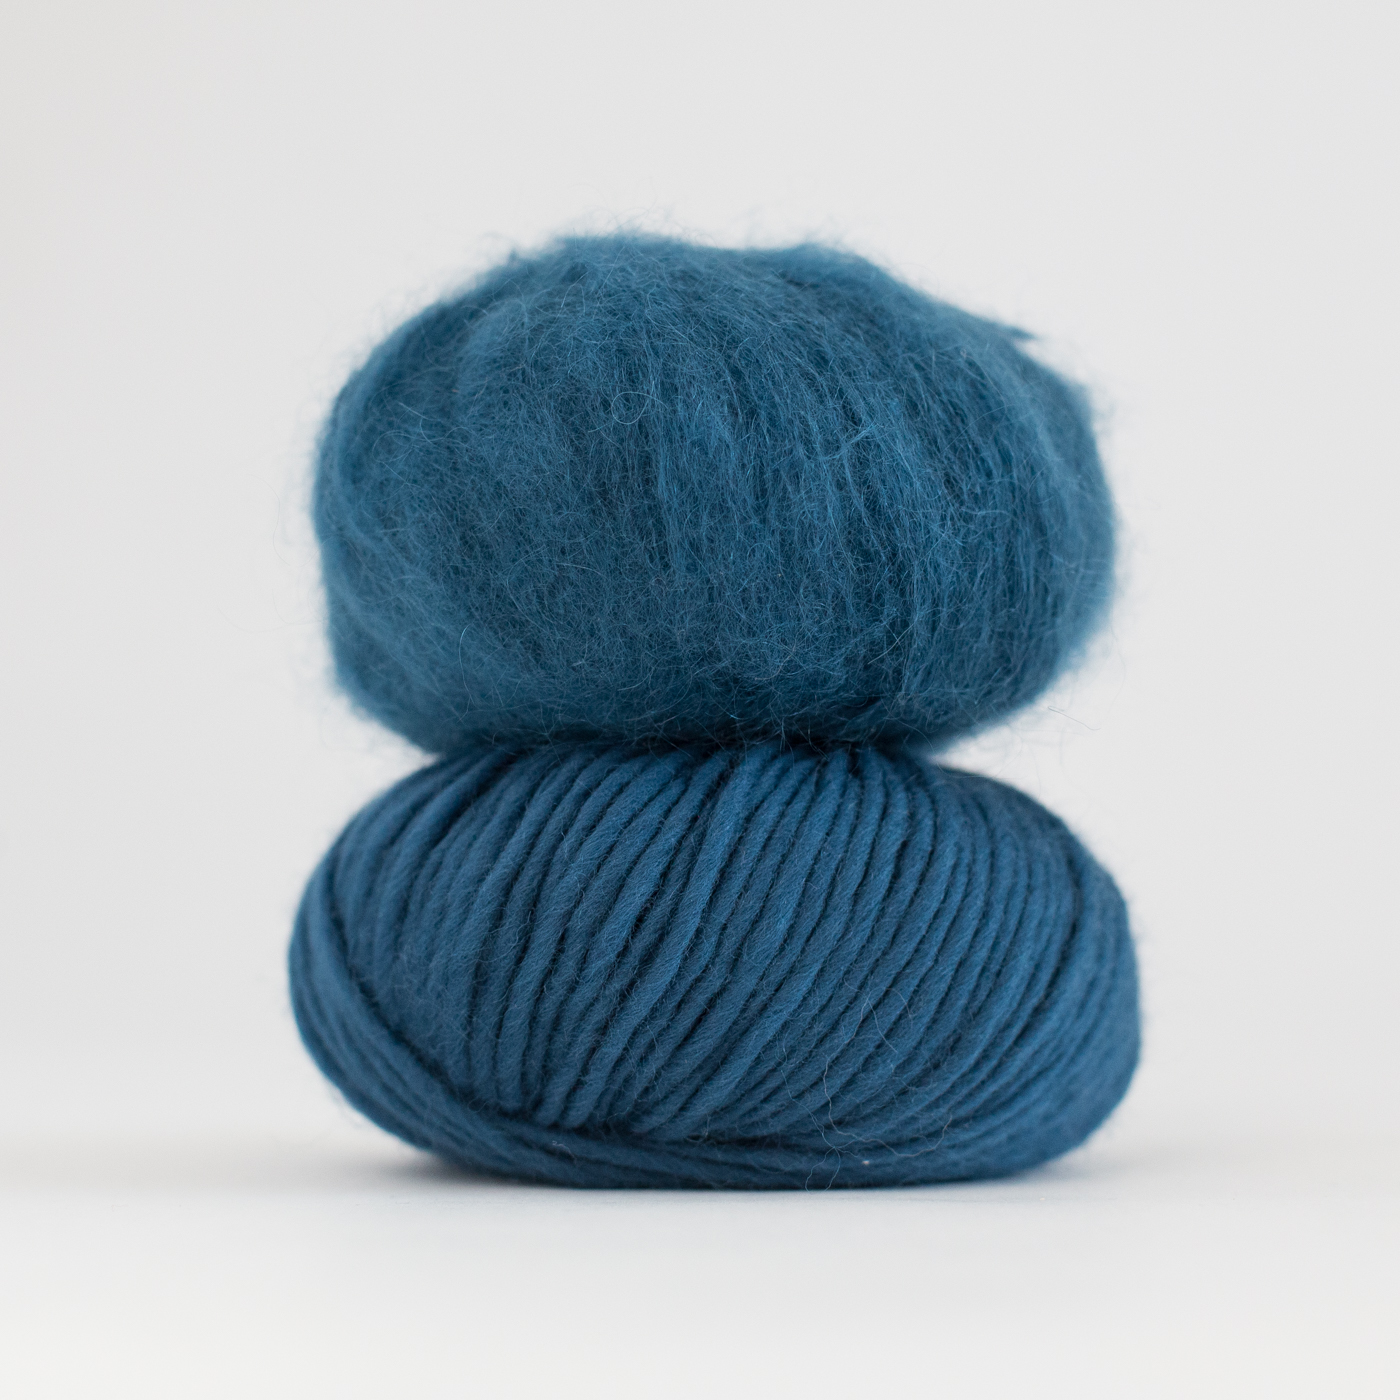 online webshop yarn pattern - Petrol blue - Hip Wool yarn | Blue yarn | Pure wool - by HipKnitShop - 09/09/2018